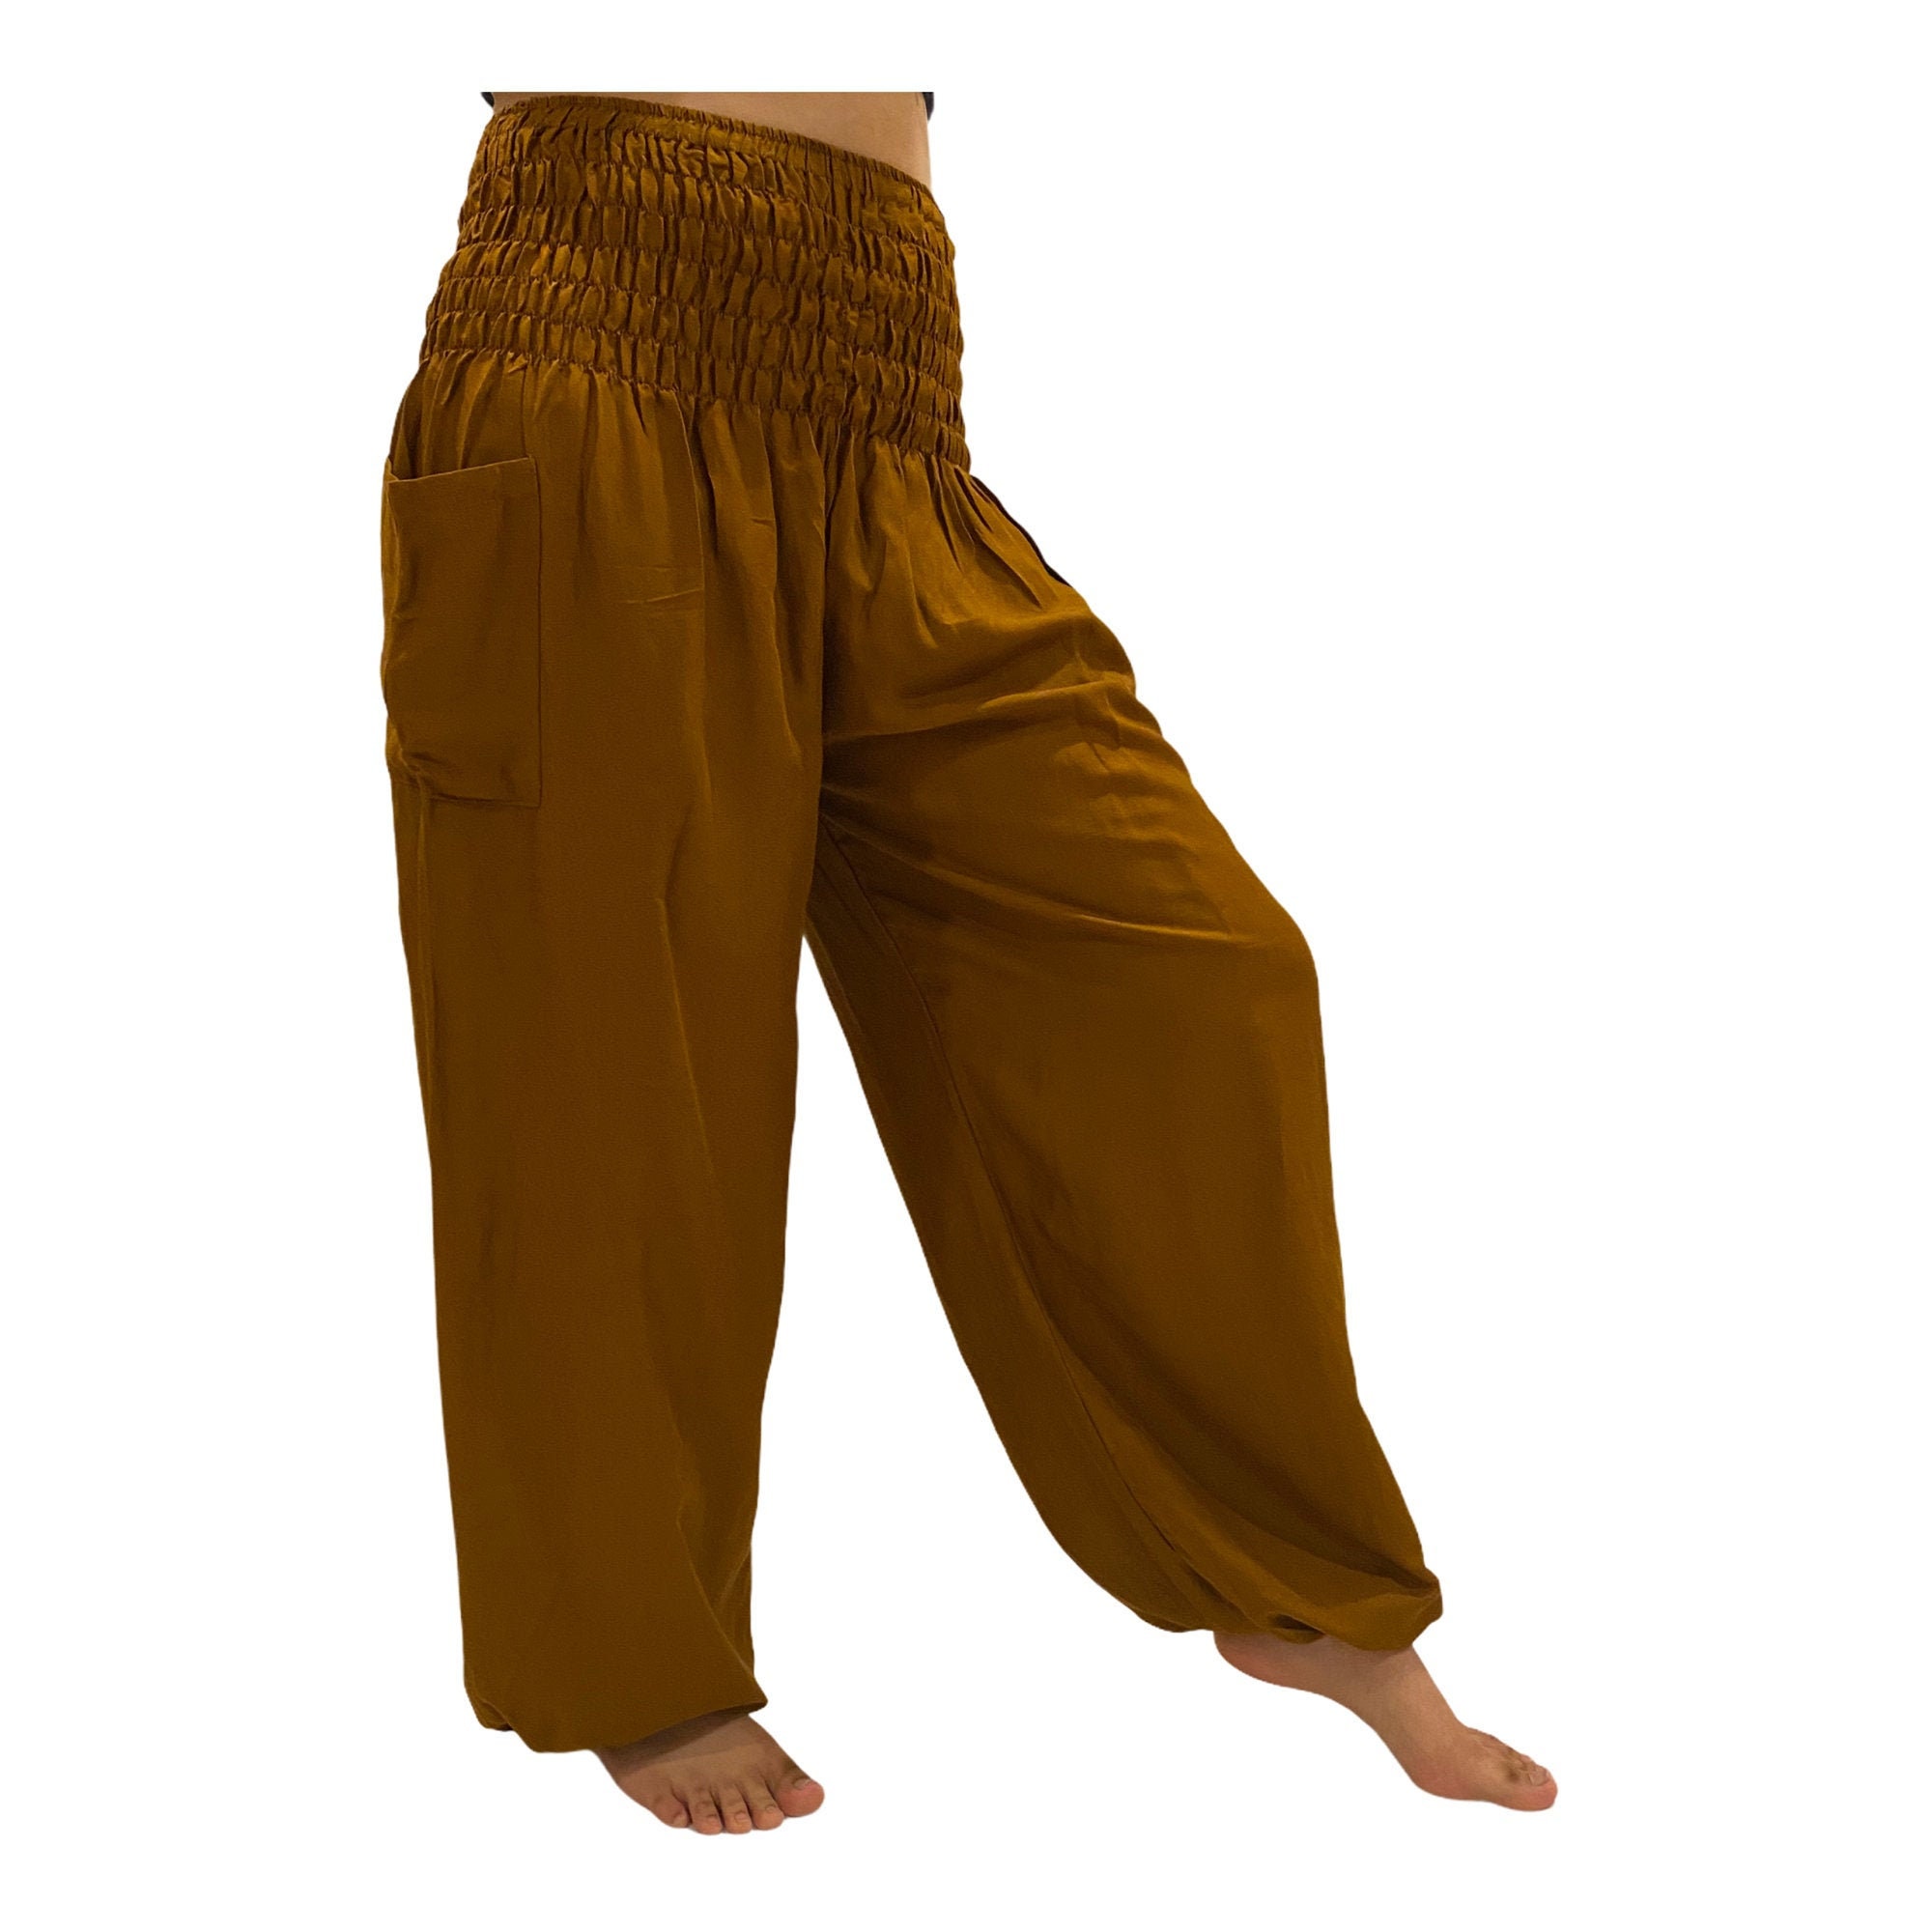 Solid Brown Low Cut Harem Pants - Lamsri Bohemian